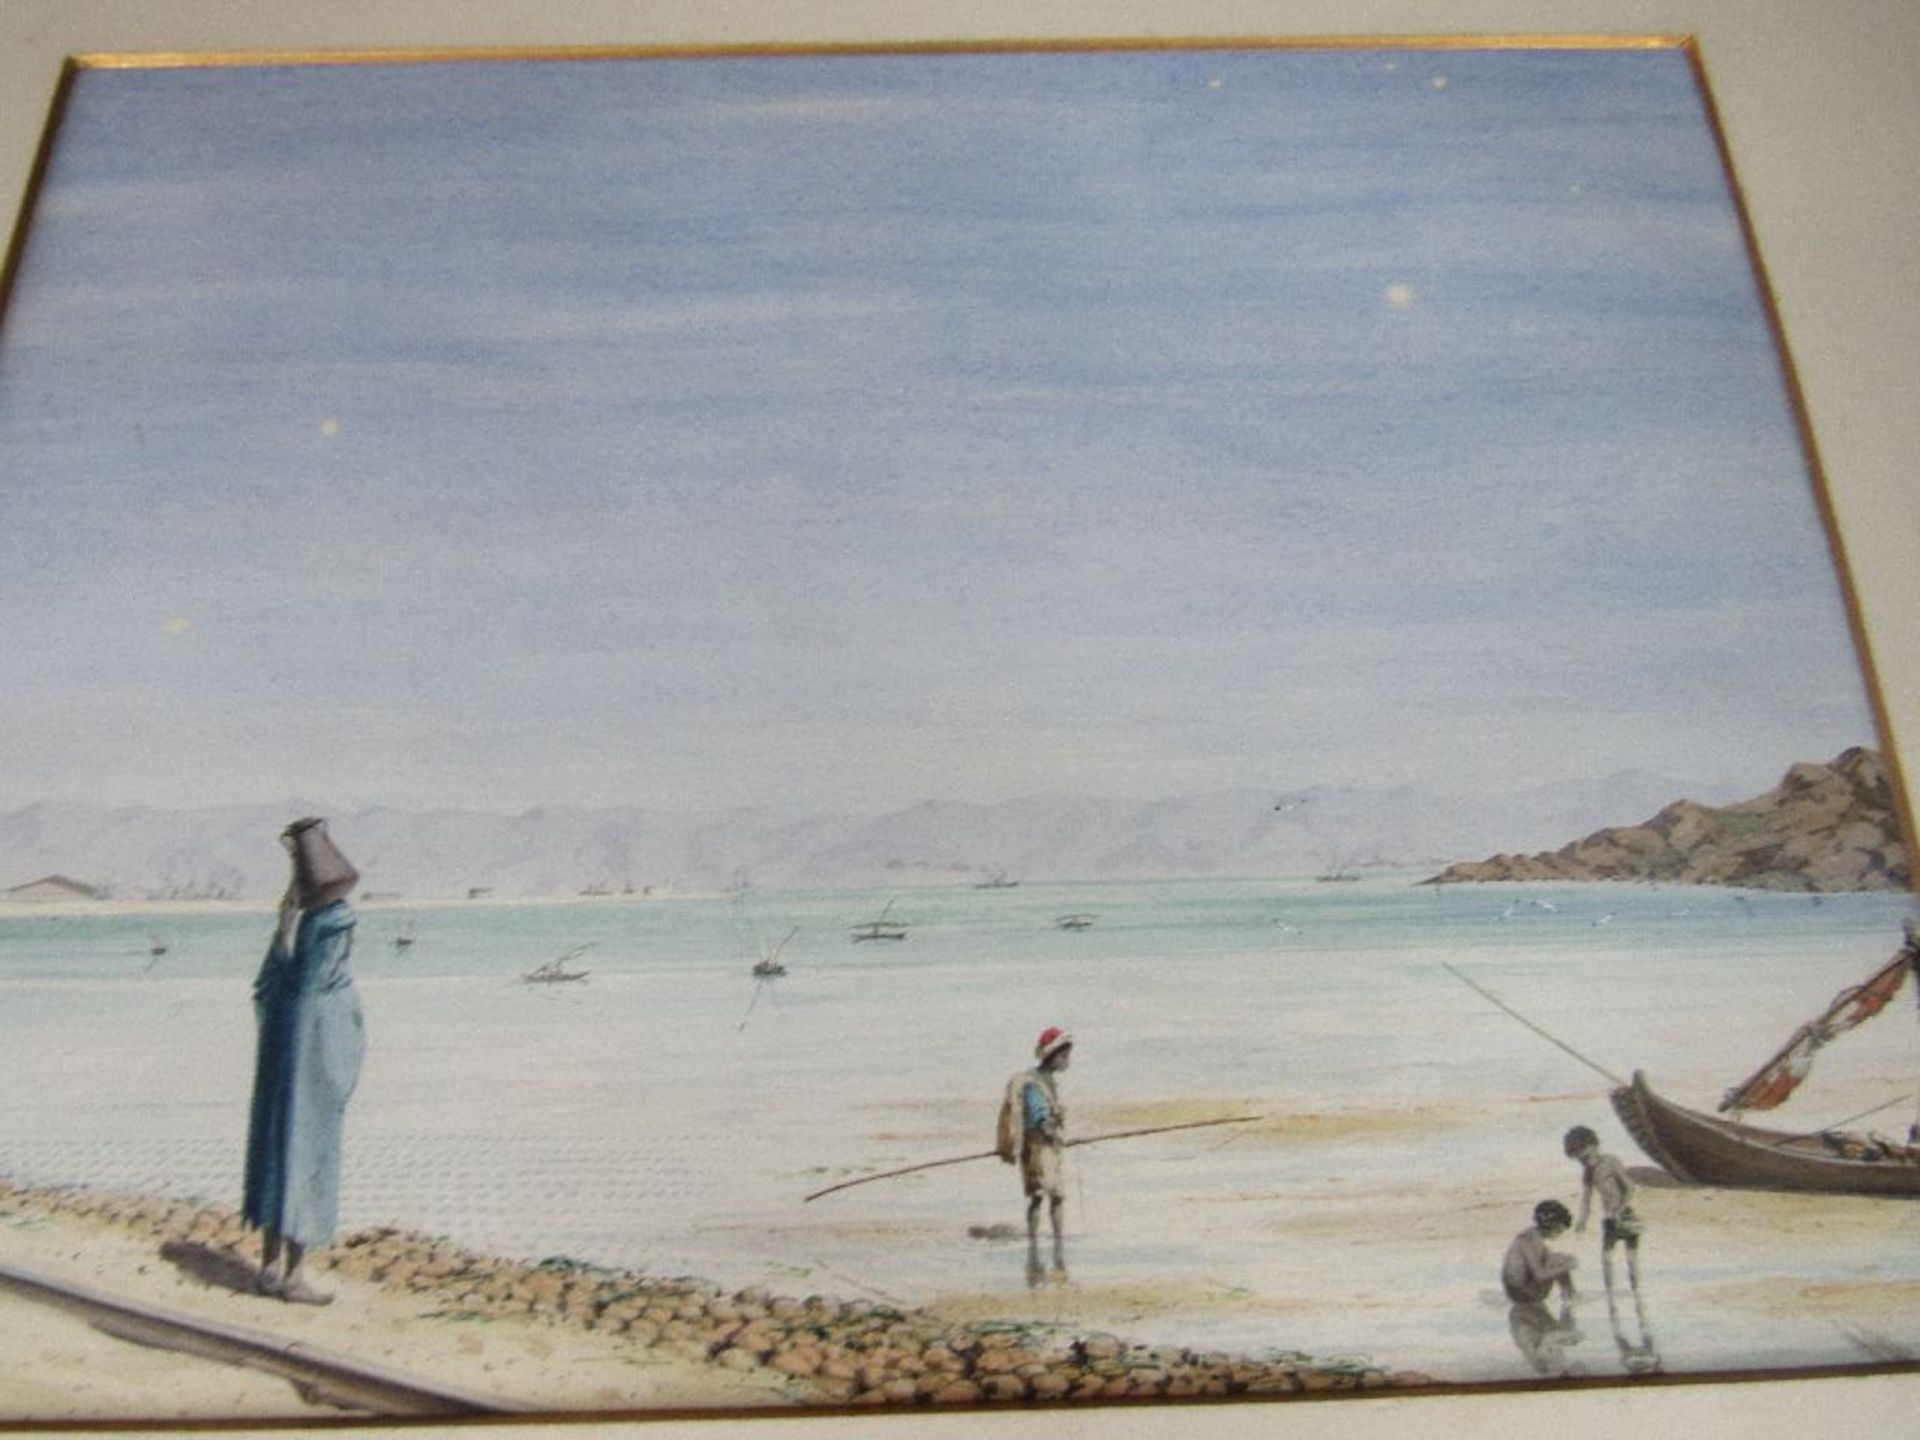 Schöne Sammlung Gemälde wohl feine Aquarelle Mitbringsel um 1900 aus Ägypten 48 Exemplare komplett - Bild 11 aus 13